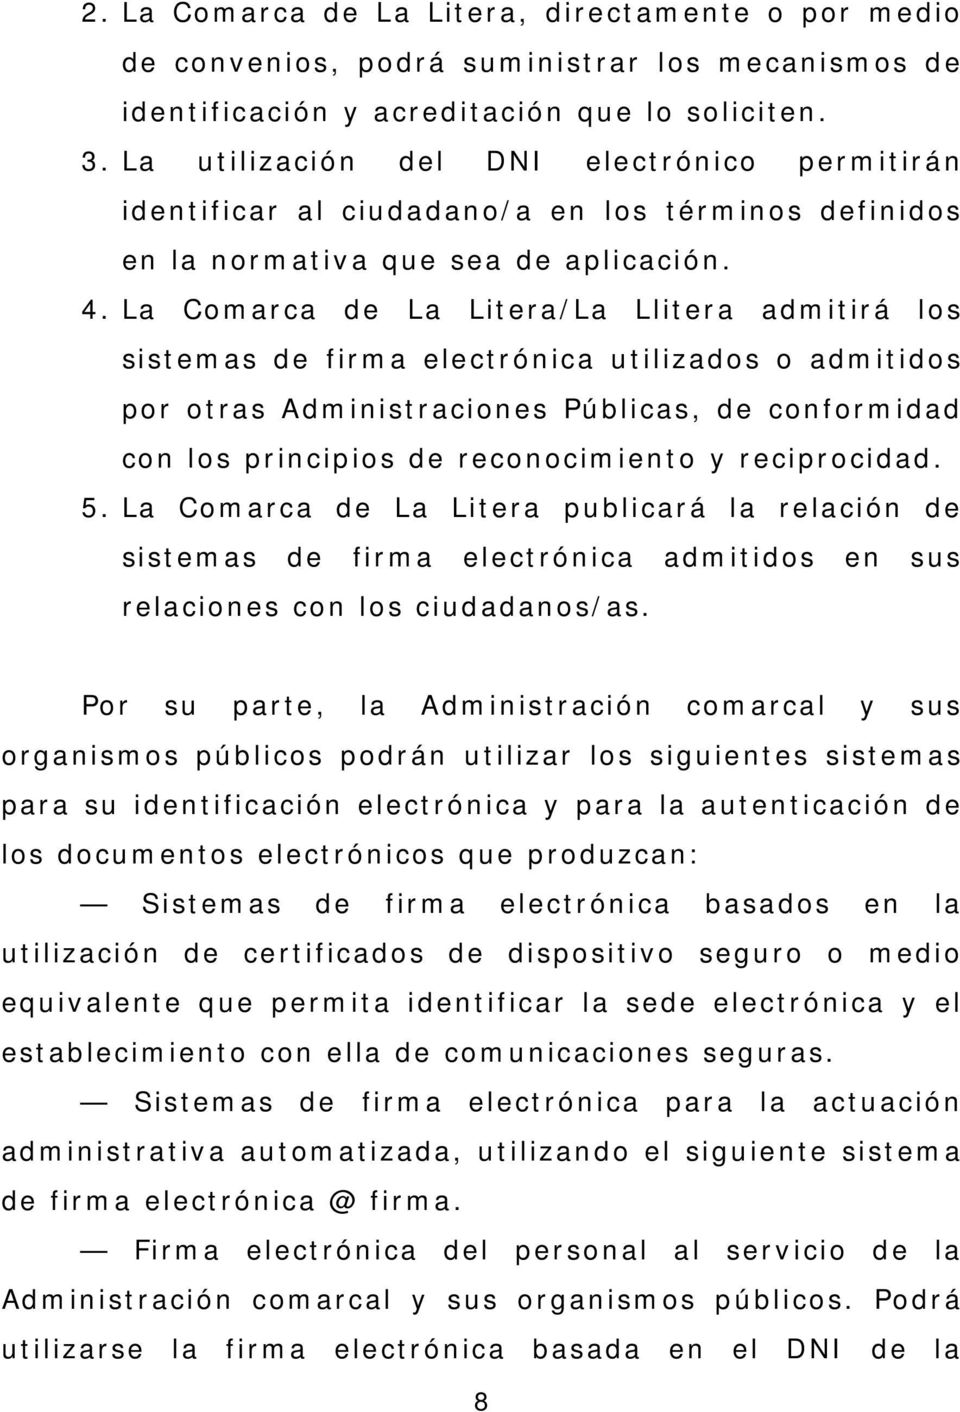 La Comarca de La Litera/La Llitera admitirá los sistemas de firma electrónica utilizados o admitidos por otras Administraciones Públicas, de conformidad con los principios de reconocimiento y